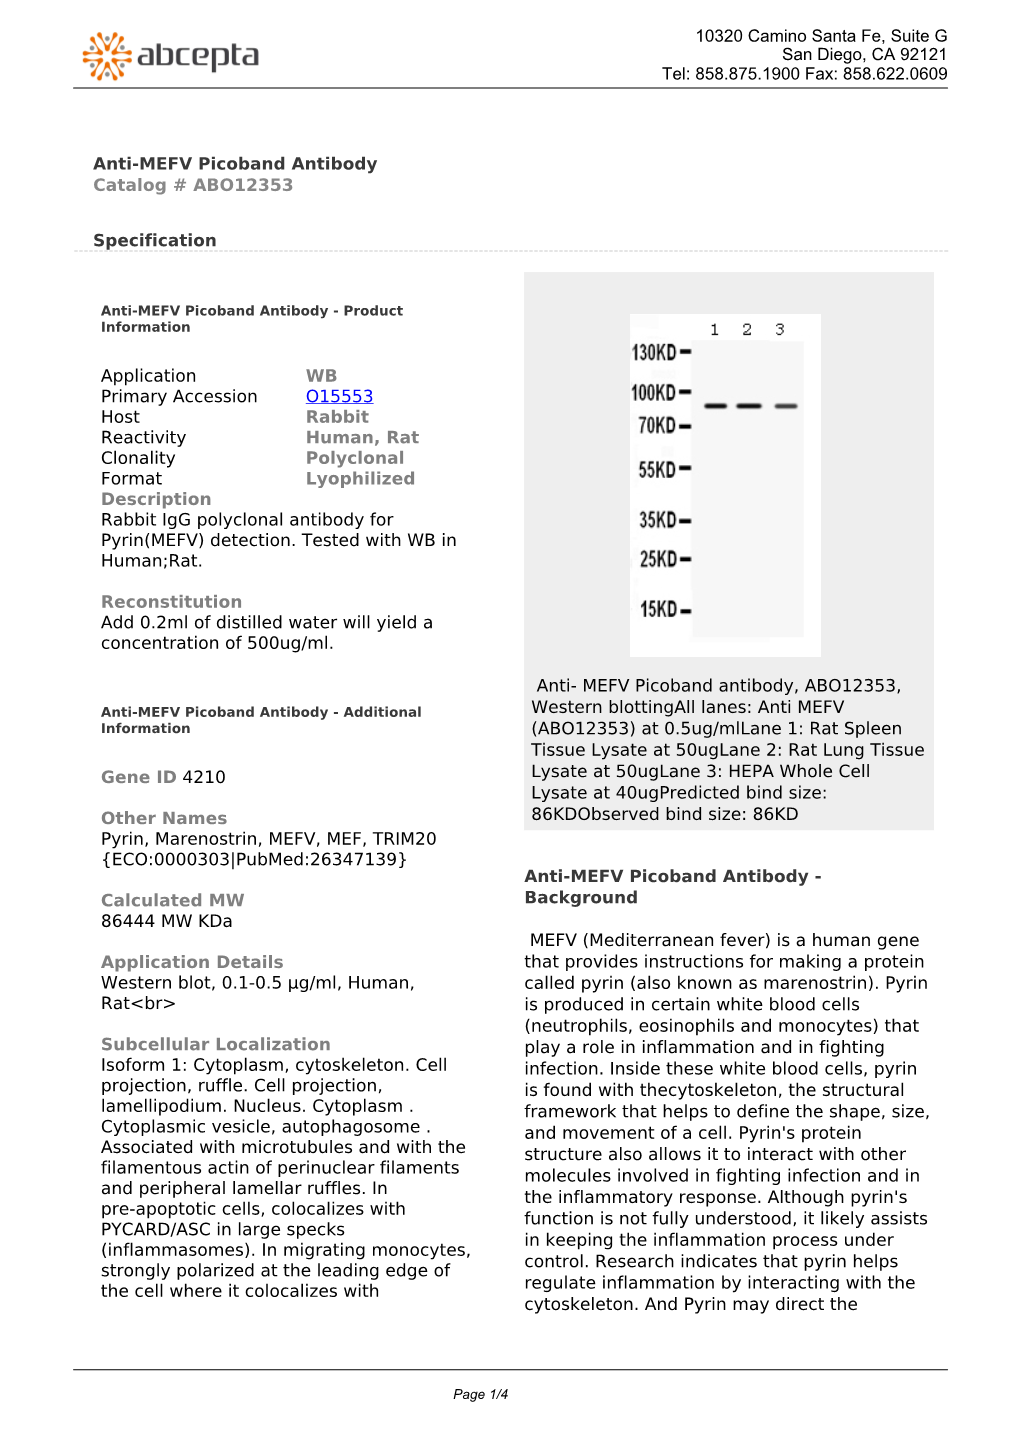 Anti-MEFV Picoband Antibody Catalog # ABO12353